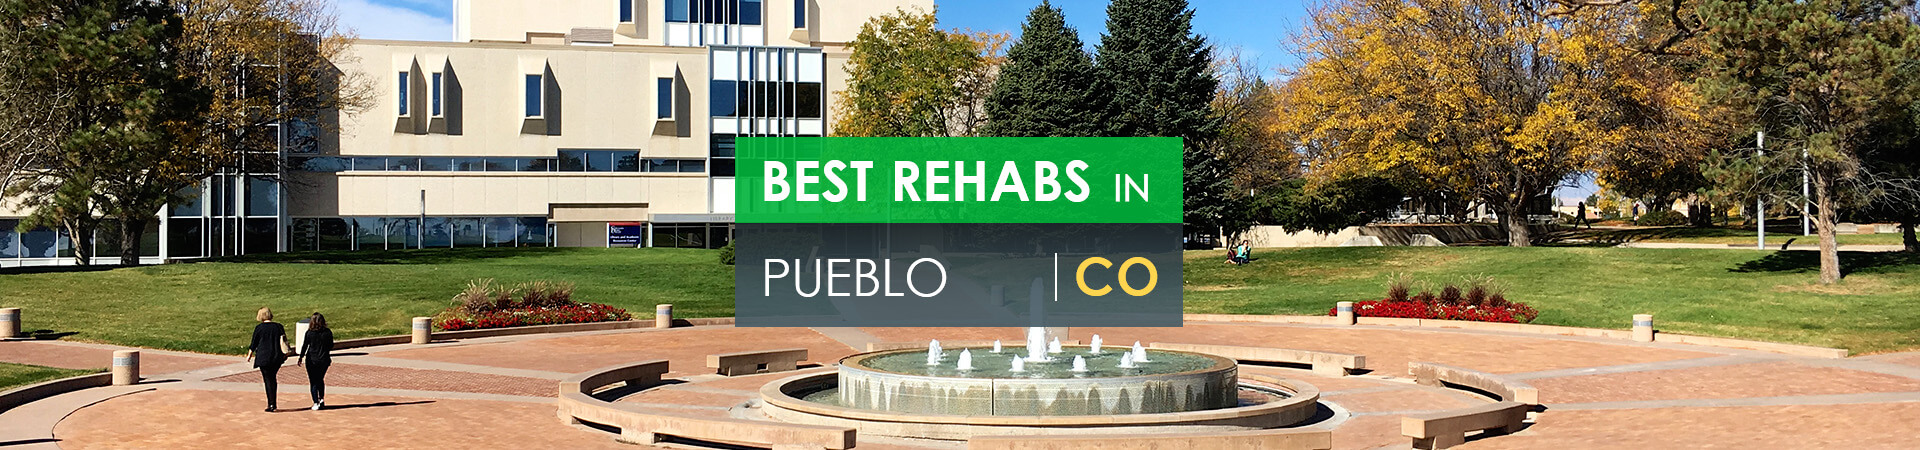 Best rehabs in Pueblo, CO